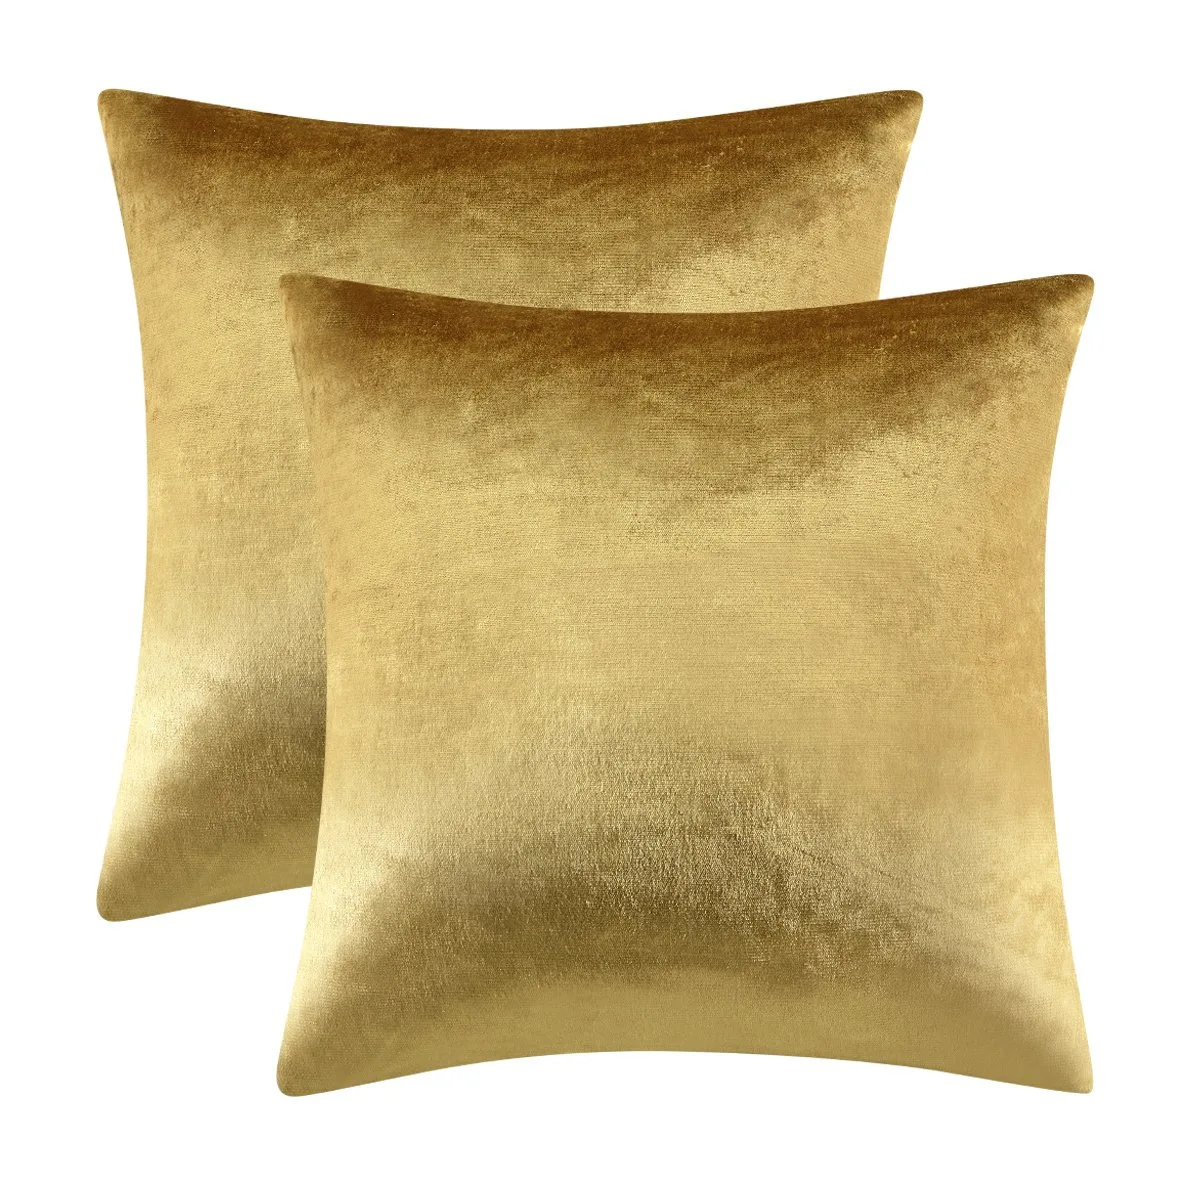 Nuova federa in oro cuscino in tessuto di velluto lucido 45x45cm cuscino per divano 1 pz